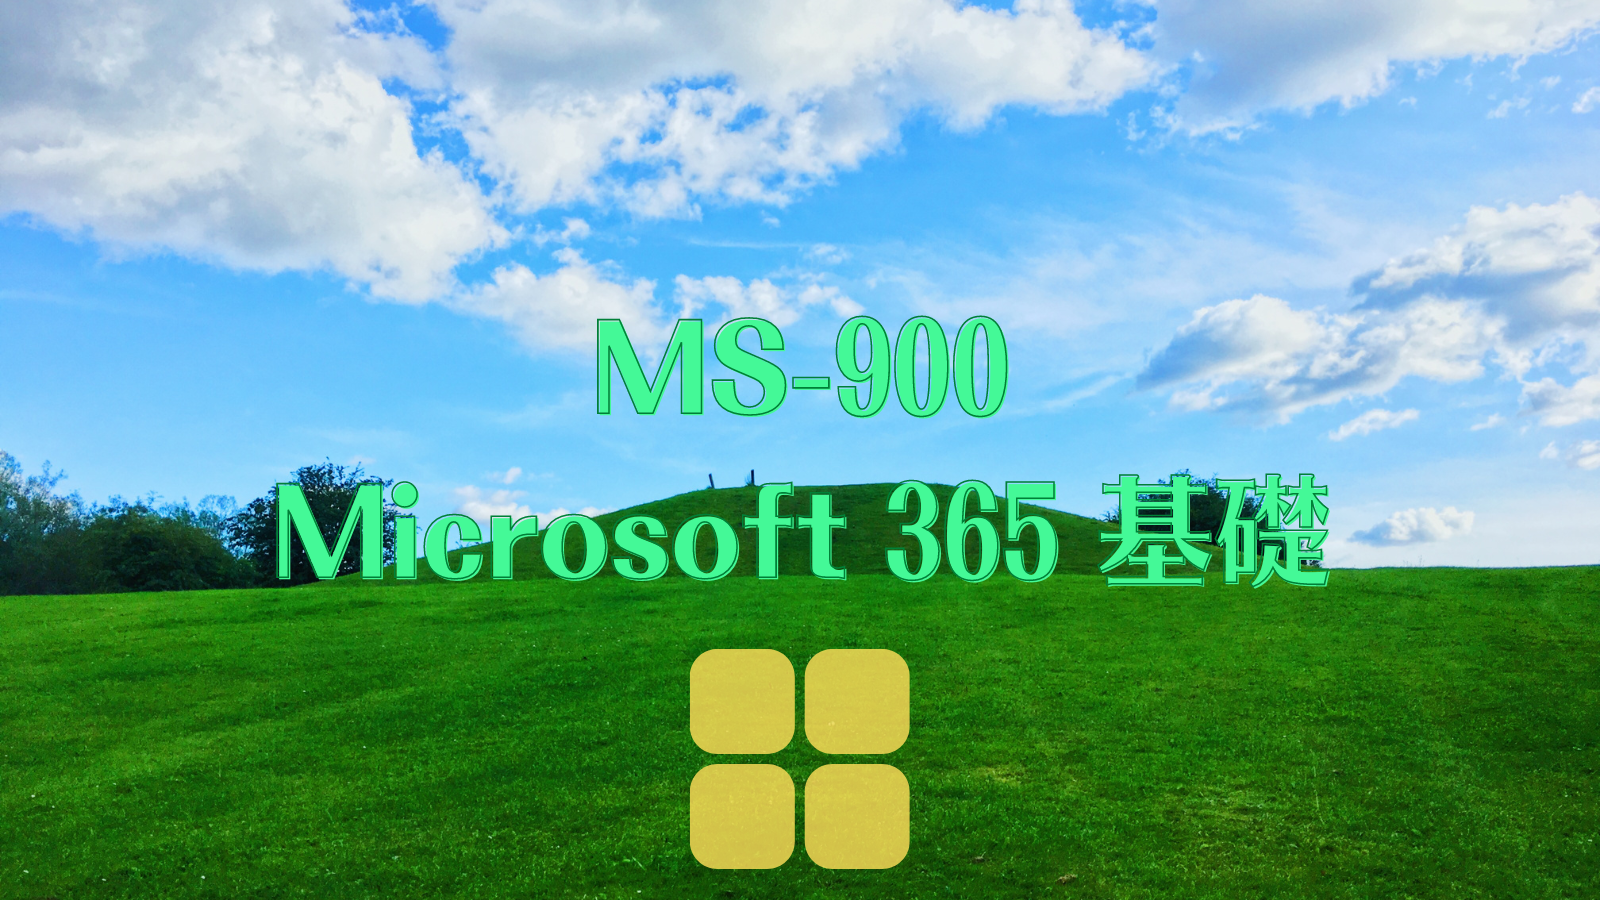 MS-900